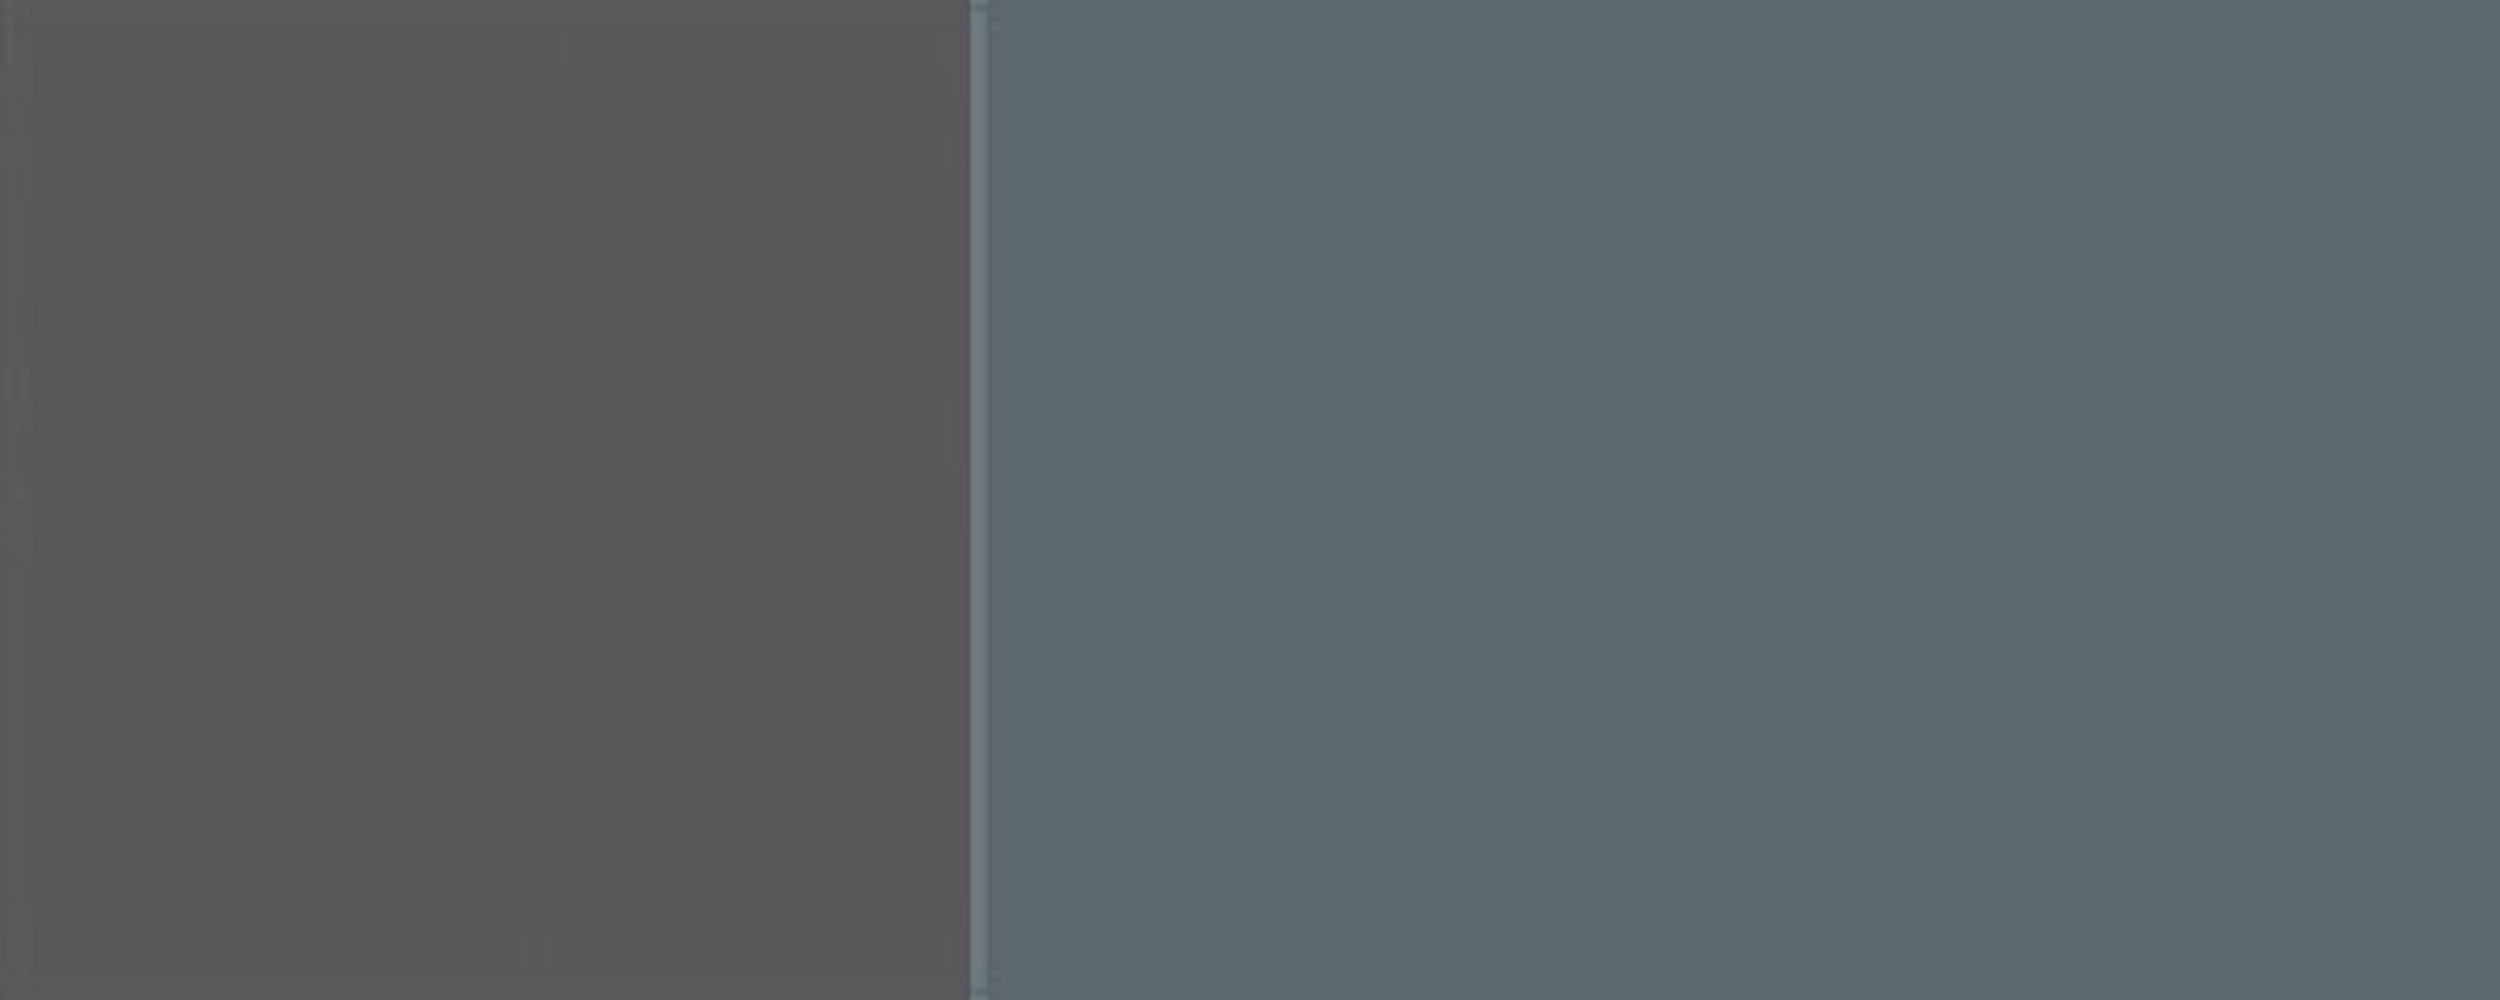 60cm 3 Backofenumbauschrank RAL blaugrau Florence (Florence) 7031 Schubladen Ausführung wählbar Front-, und Hochglanz Feldmann-Wohnen Korpusfarbe grifflos